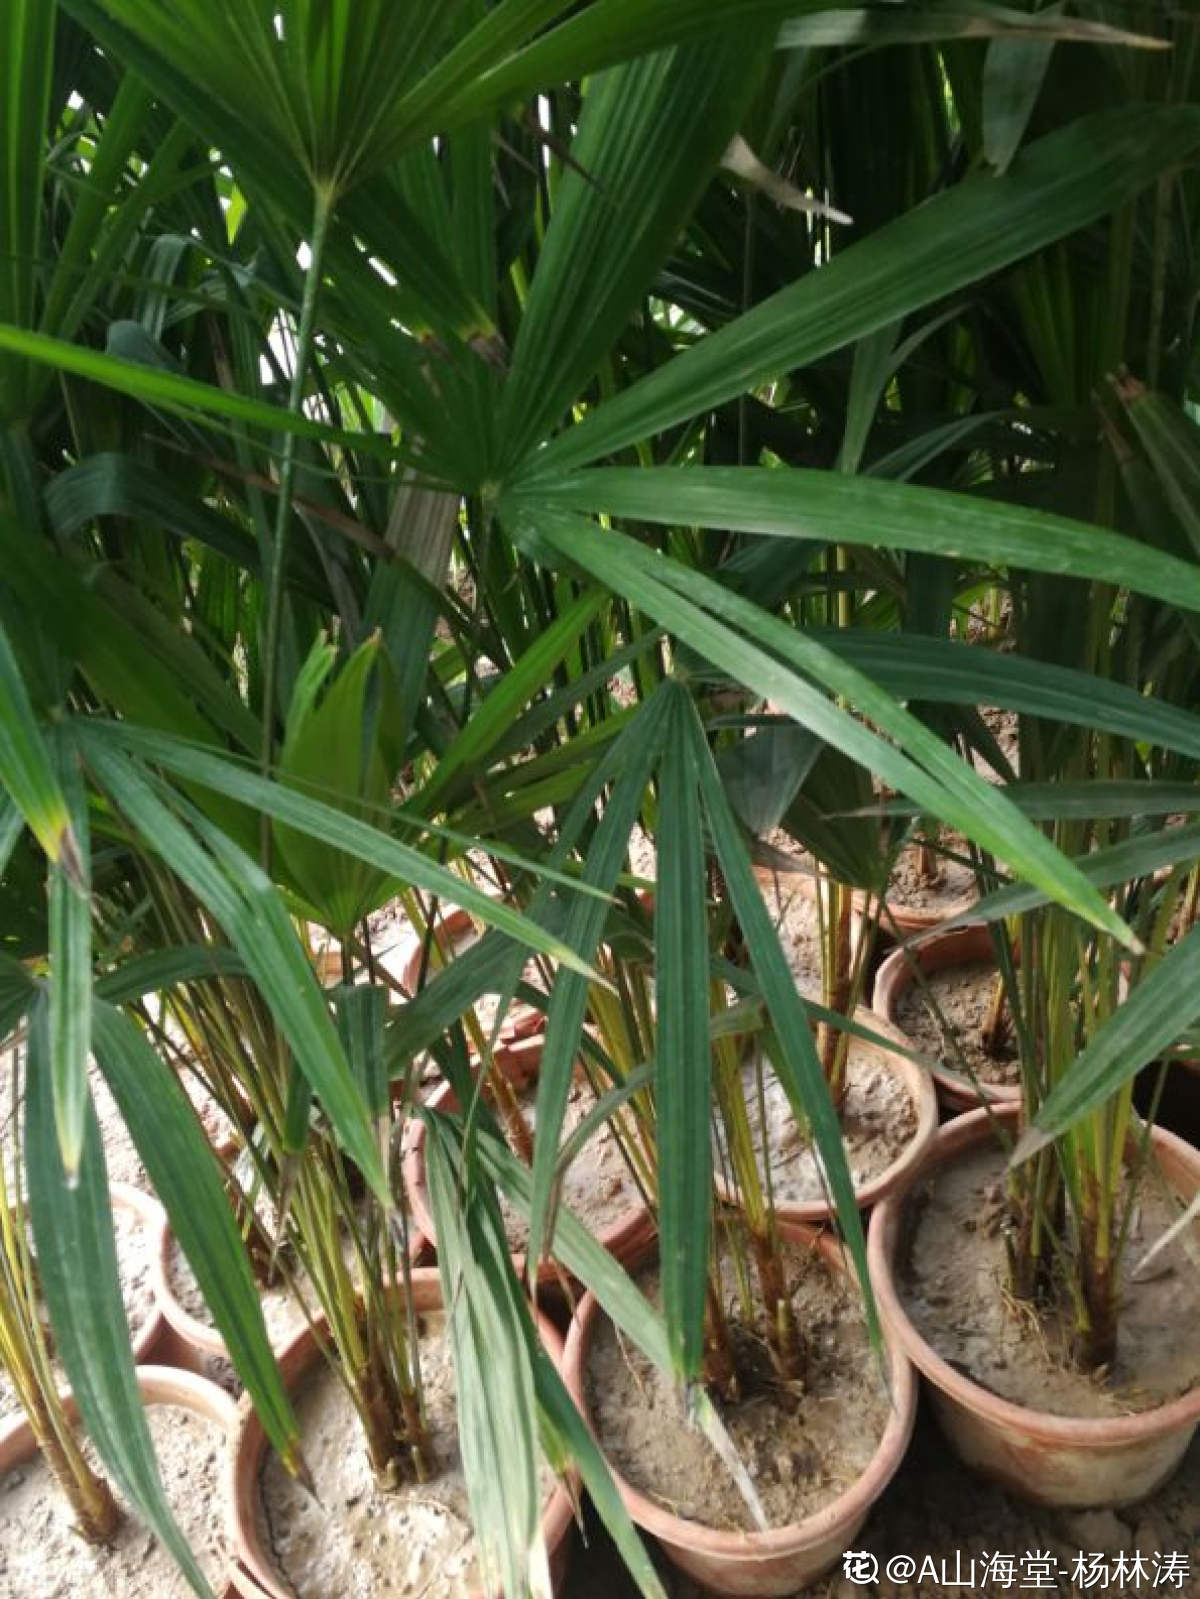 棕竹盆景的图片